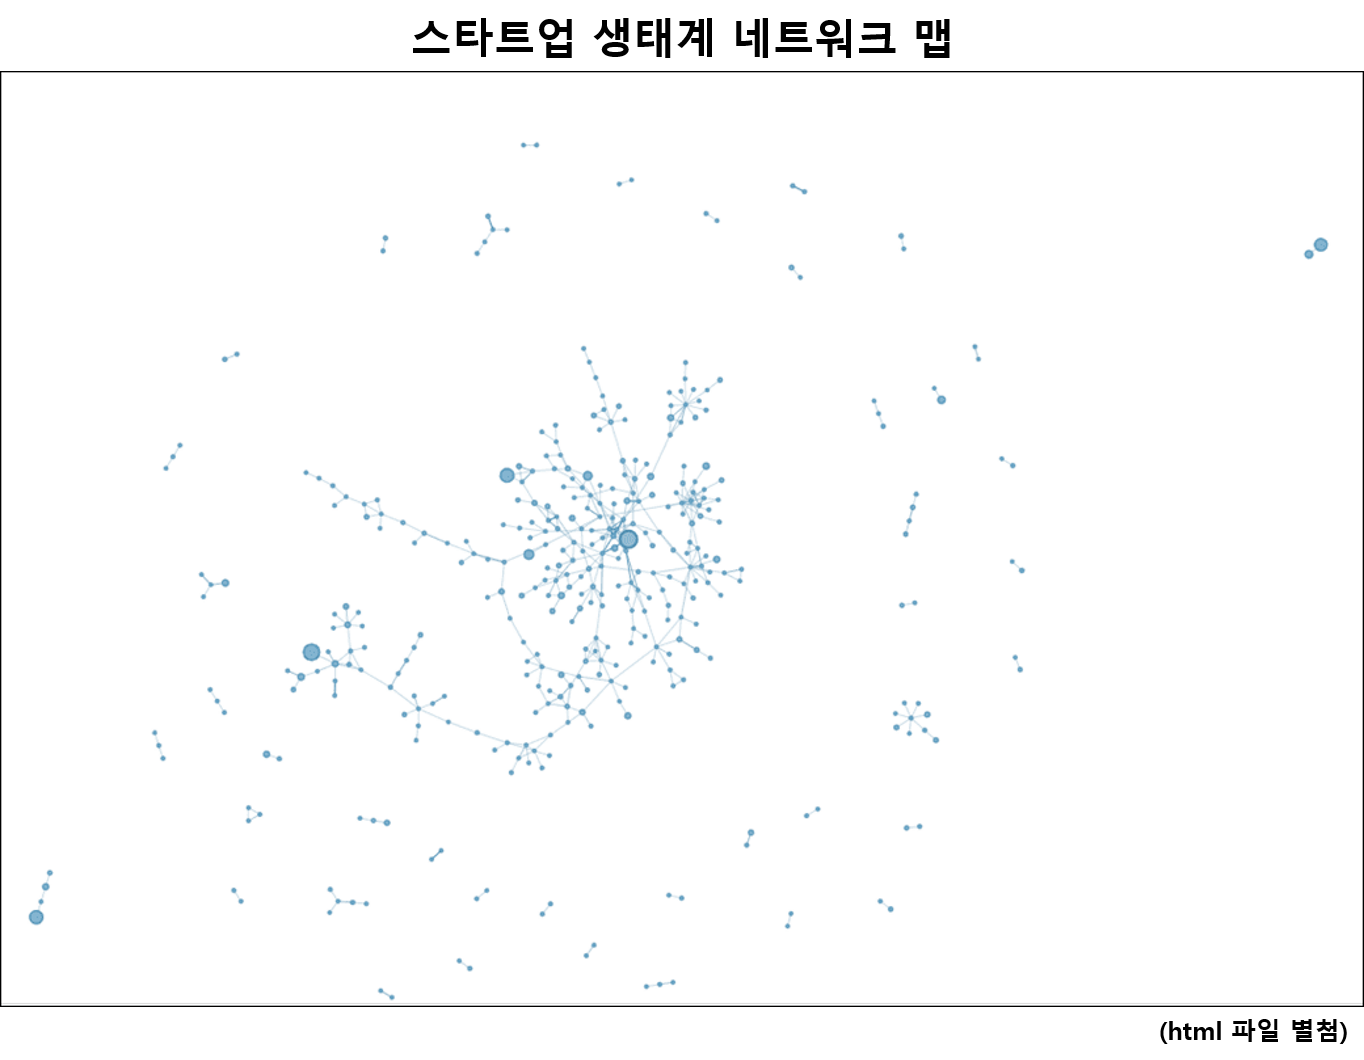 스타트업 생태계 네트워크를 나타내는 맵